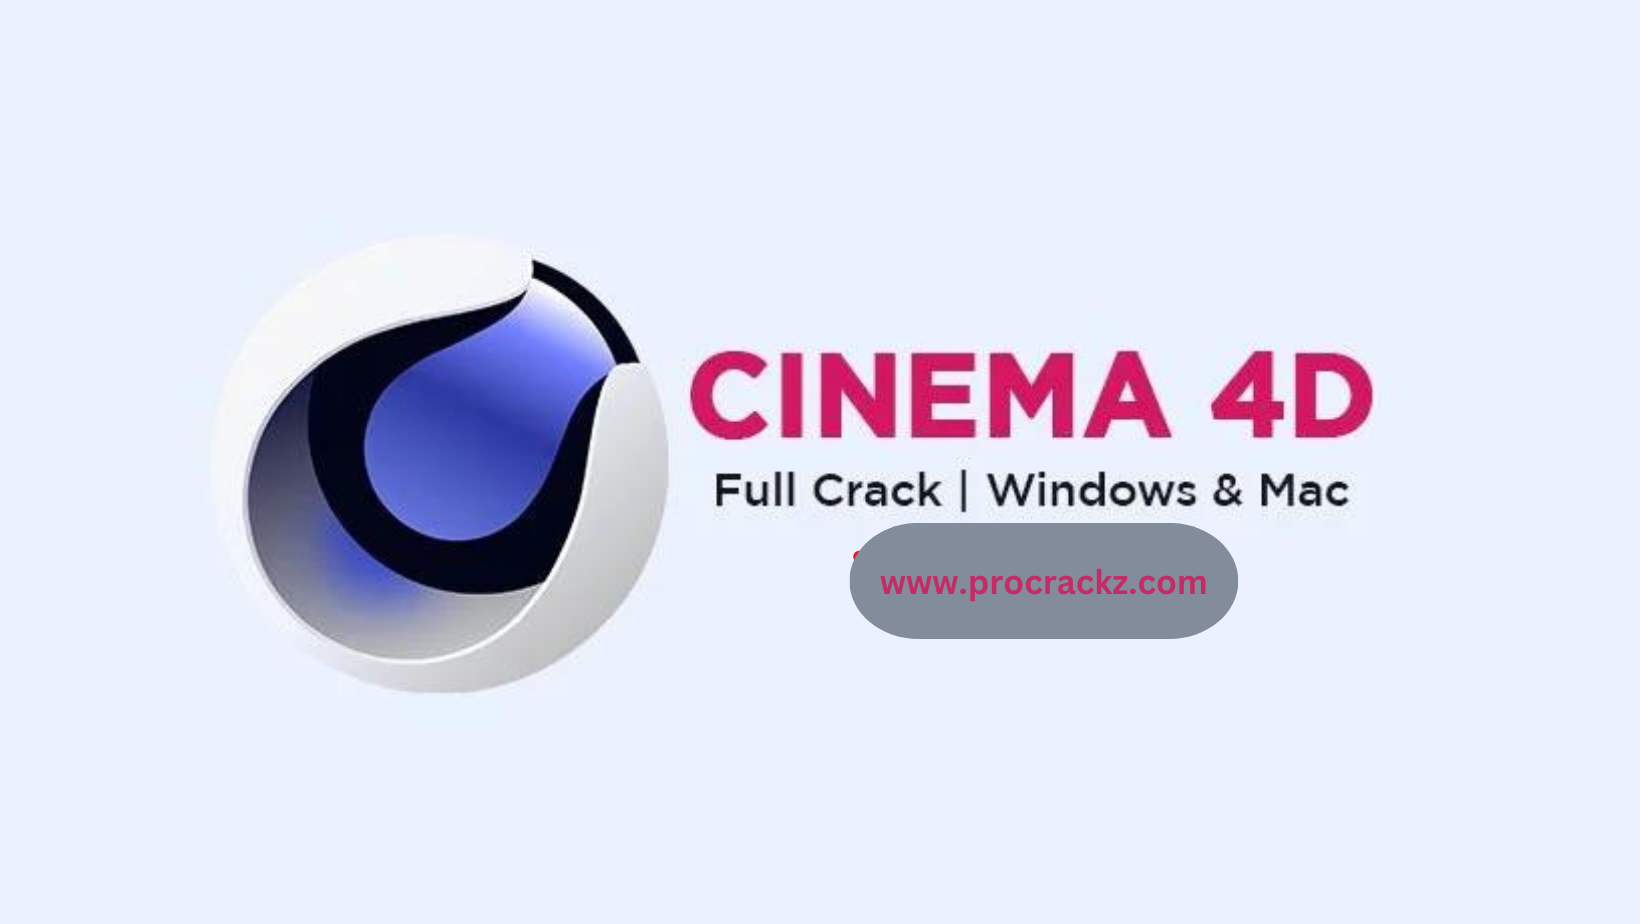 Cinema 4D full crack